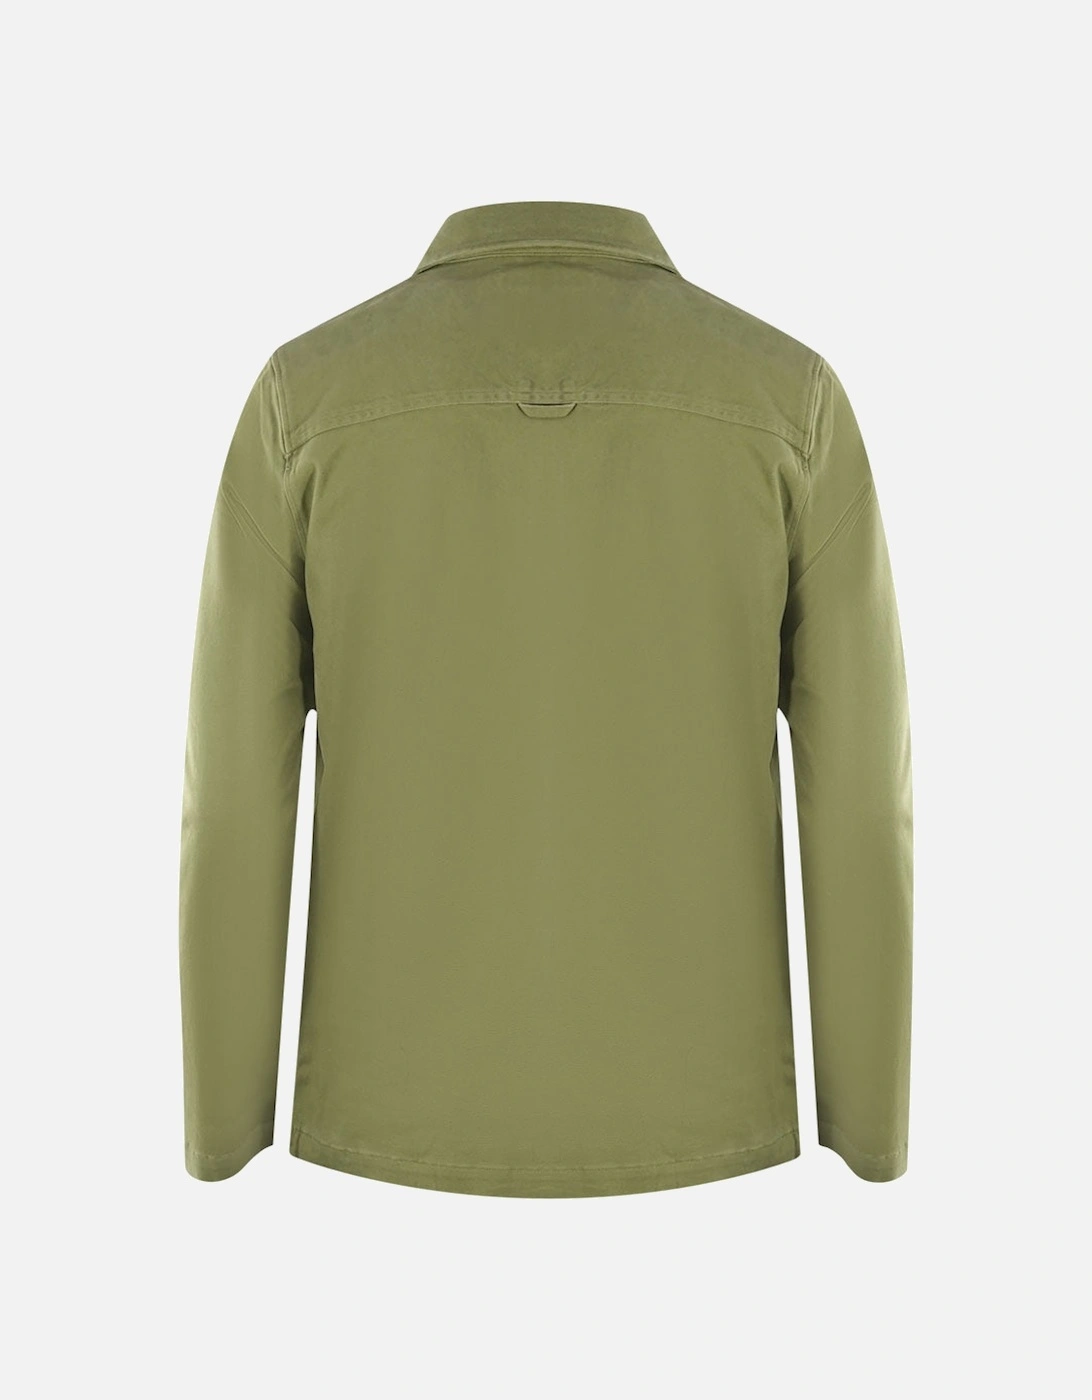 Lyle & Scott Twill Lichen Green Overshirt Jacket